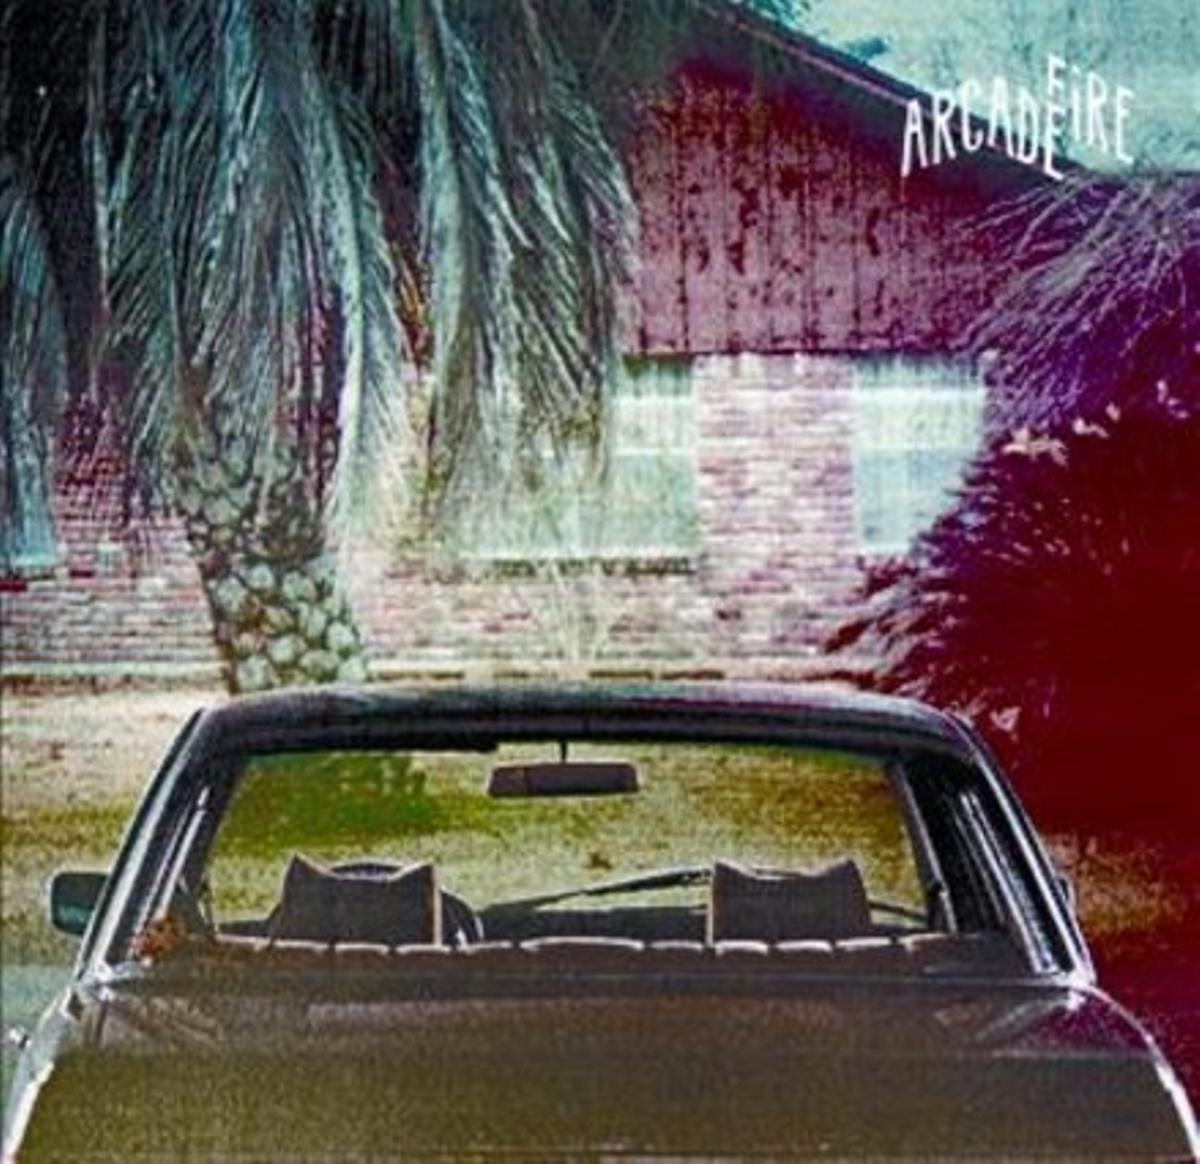 Arcade Fire publica l’esperat ’The suburbs’, disc en què perfecciona els seus mètodes coneguts i en tempteja amb sort alguns altres.